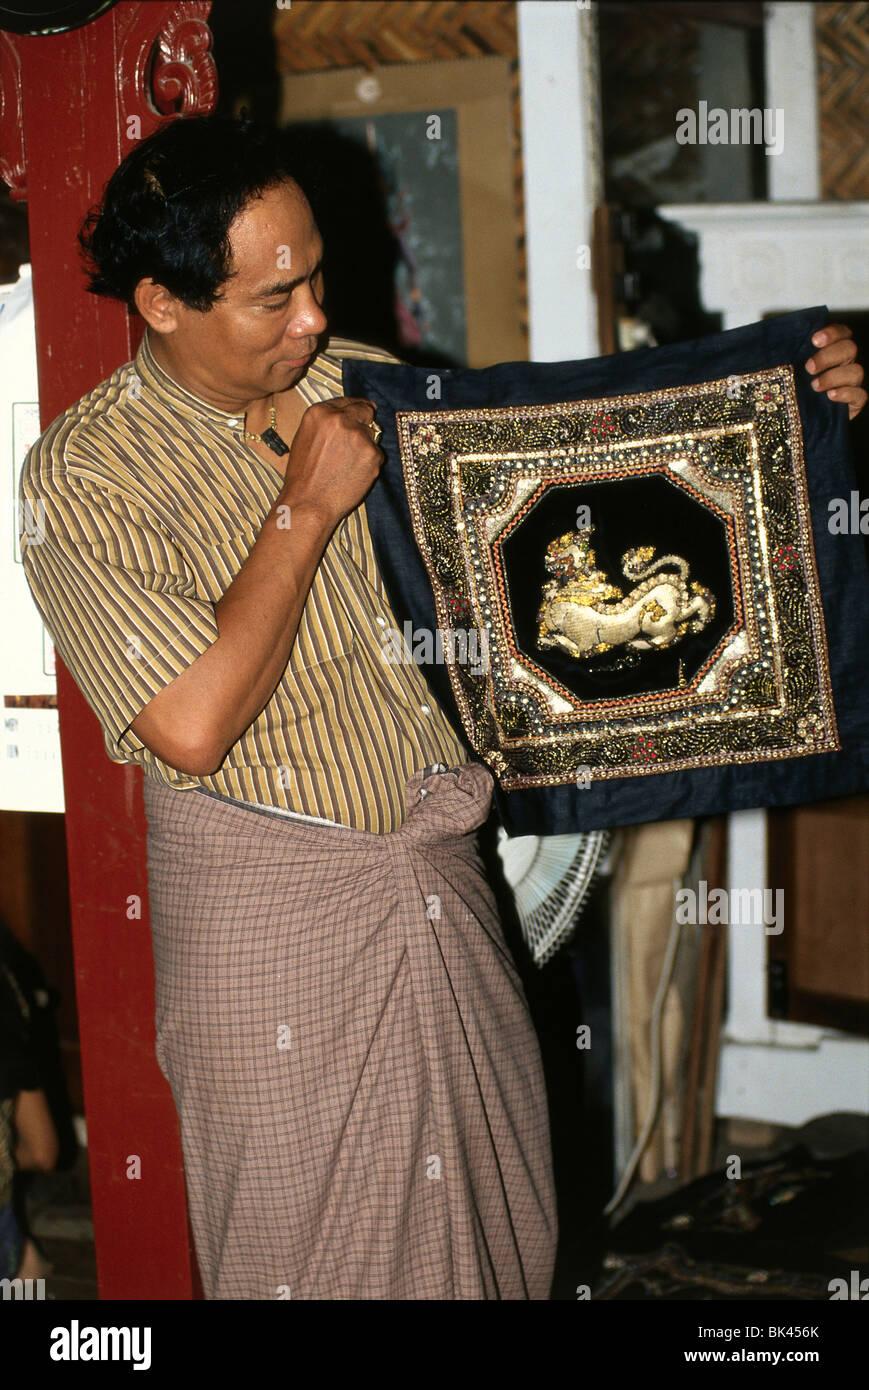 Homme tenant un birman tapisserie brodée d'or, au Myanmar Banque D'Images